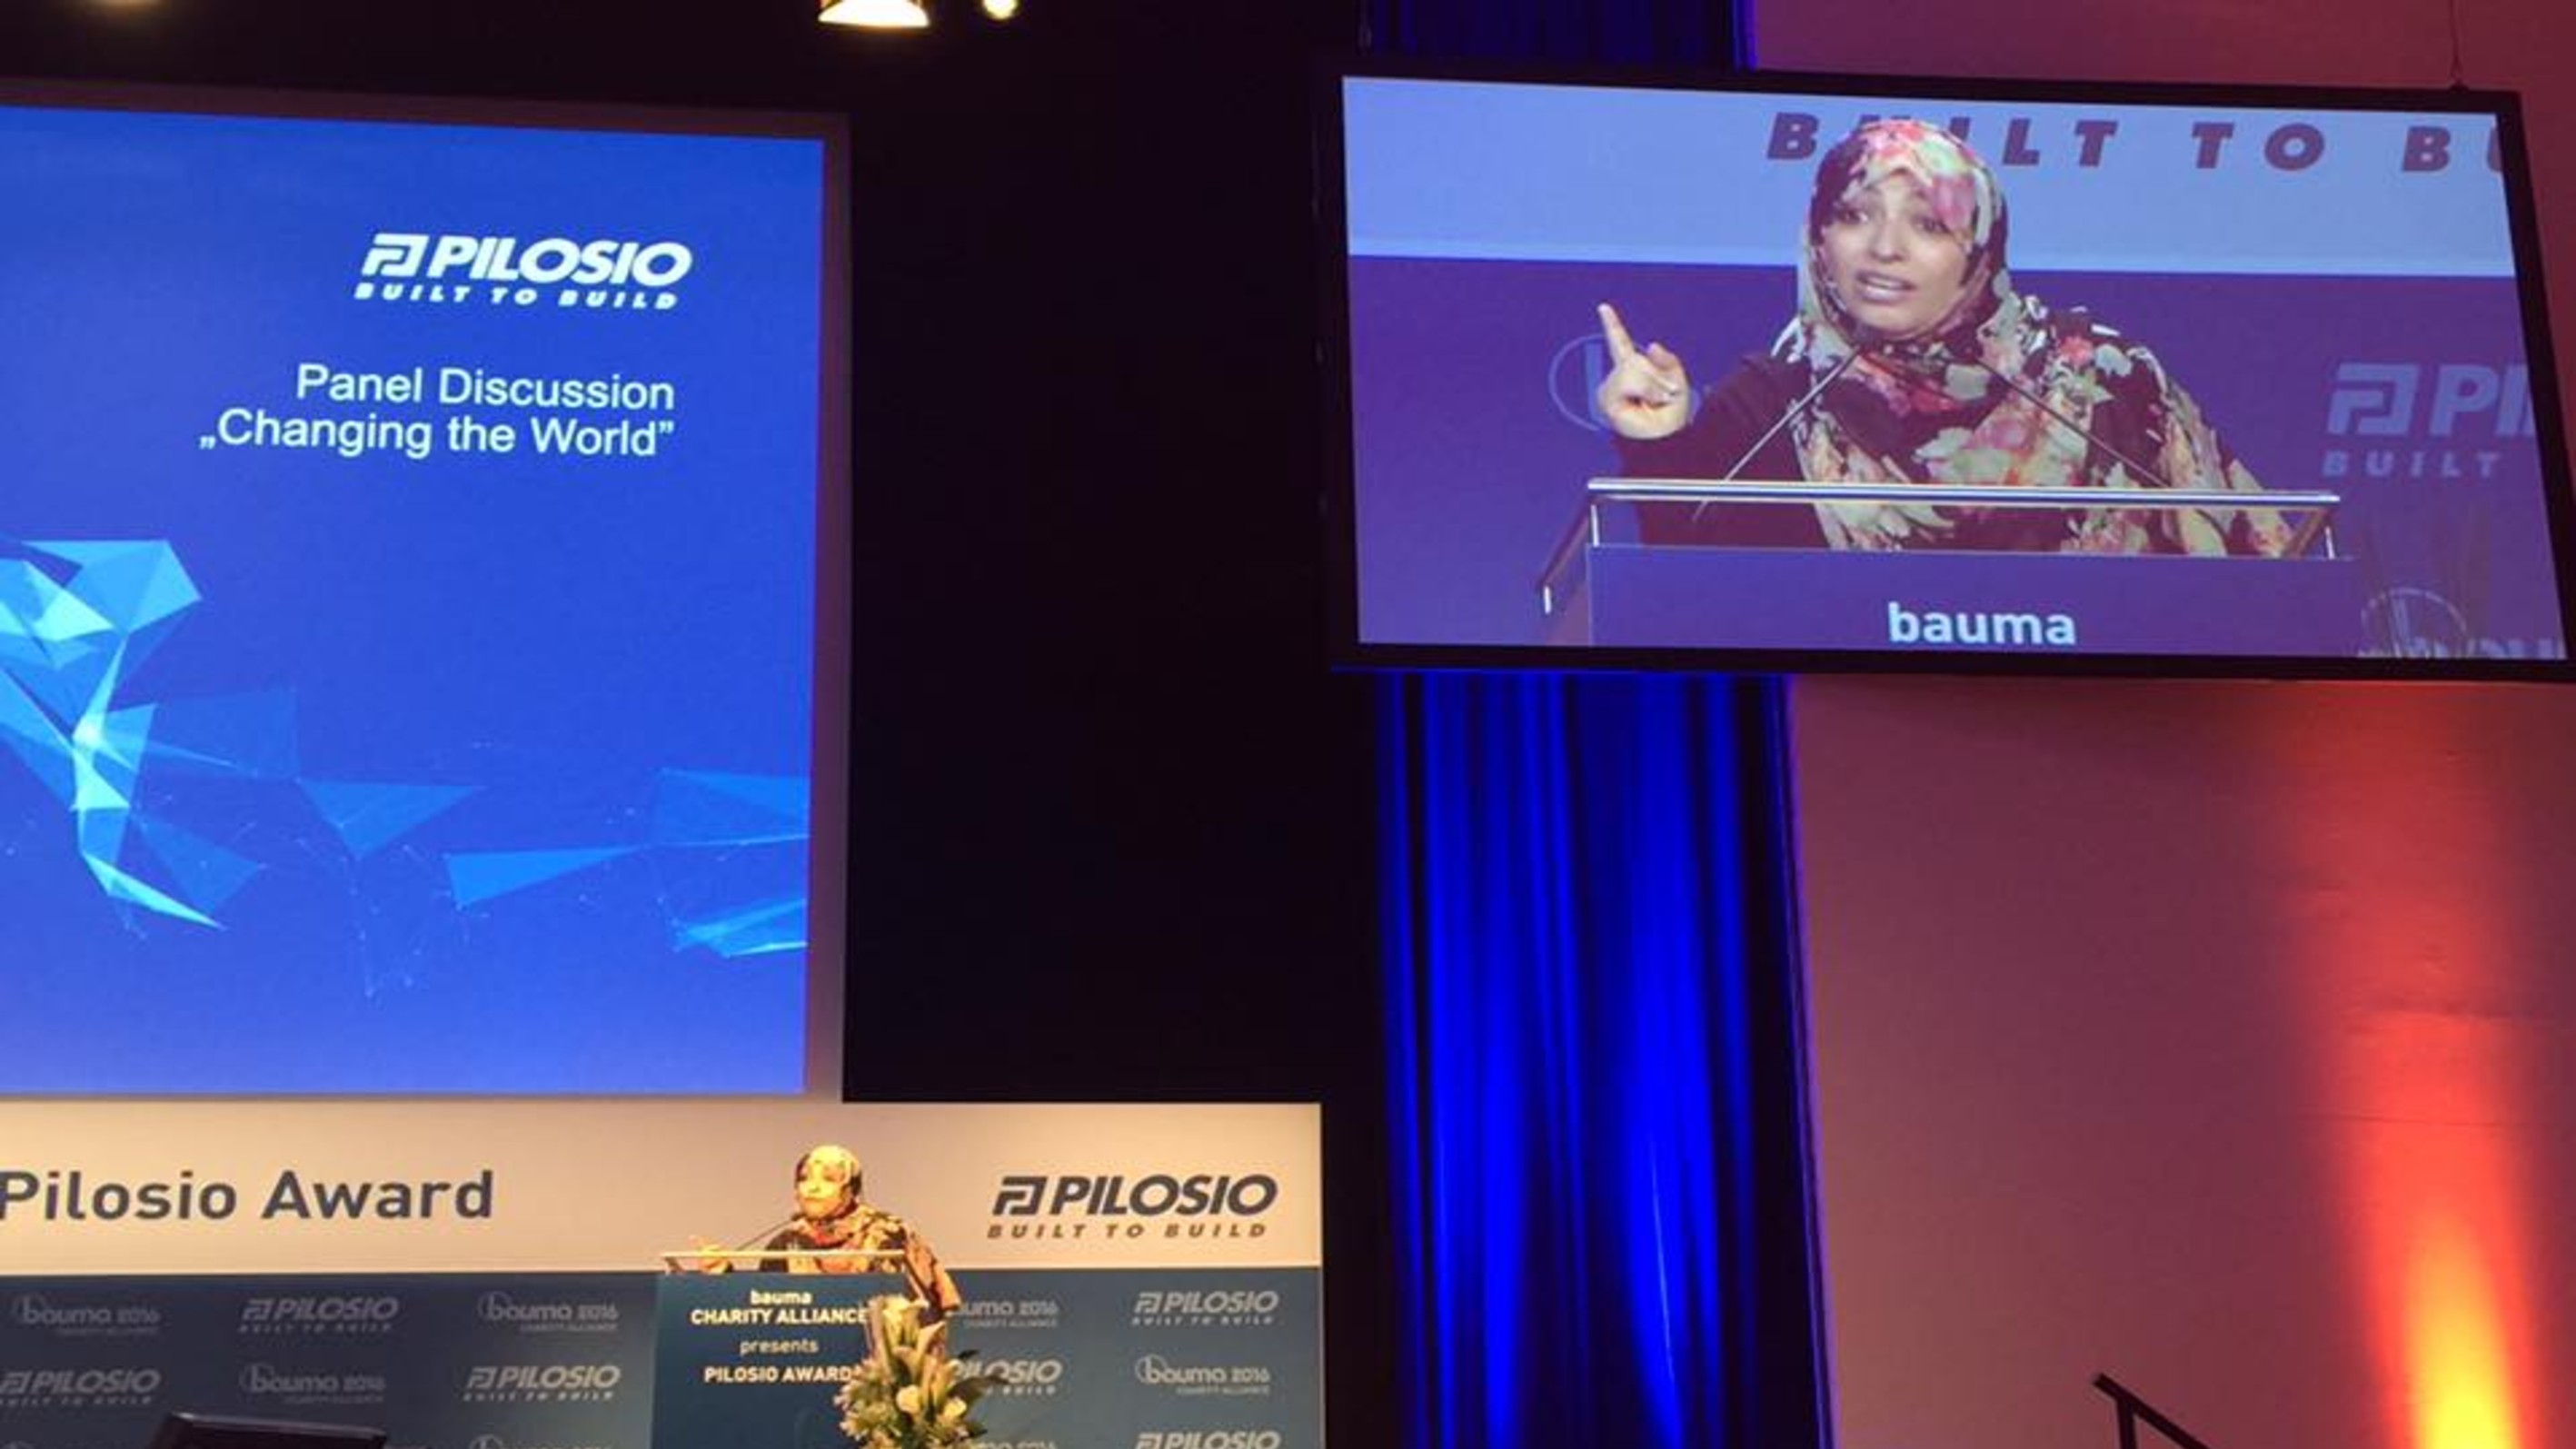 كلمة الناشطة الحائزة على جائزة نوبل للسلام توكل كرمان خلال الجلسة الافتتاحية للمؤتمر الدولي للاجئين الذي تنظمه مؤسسة "Pilosio" في مدينة ميونيخ - ألمانيا